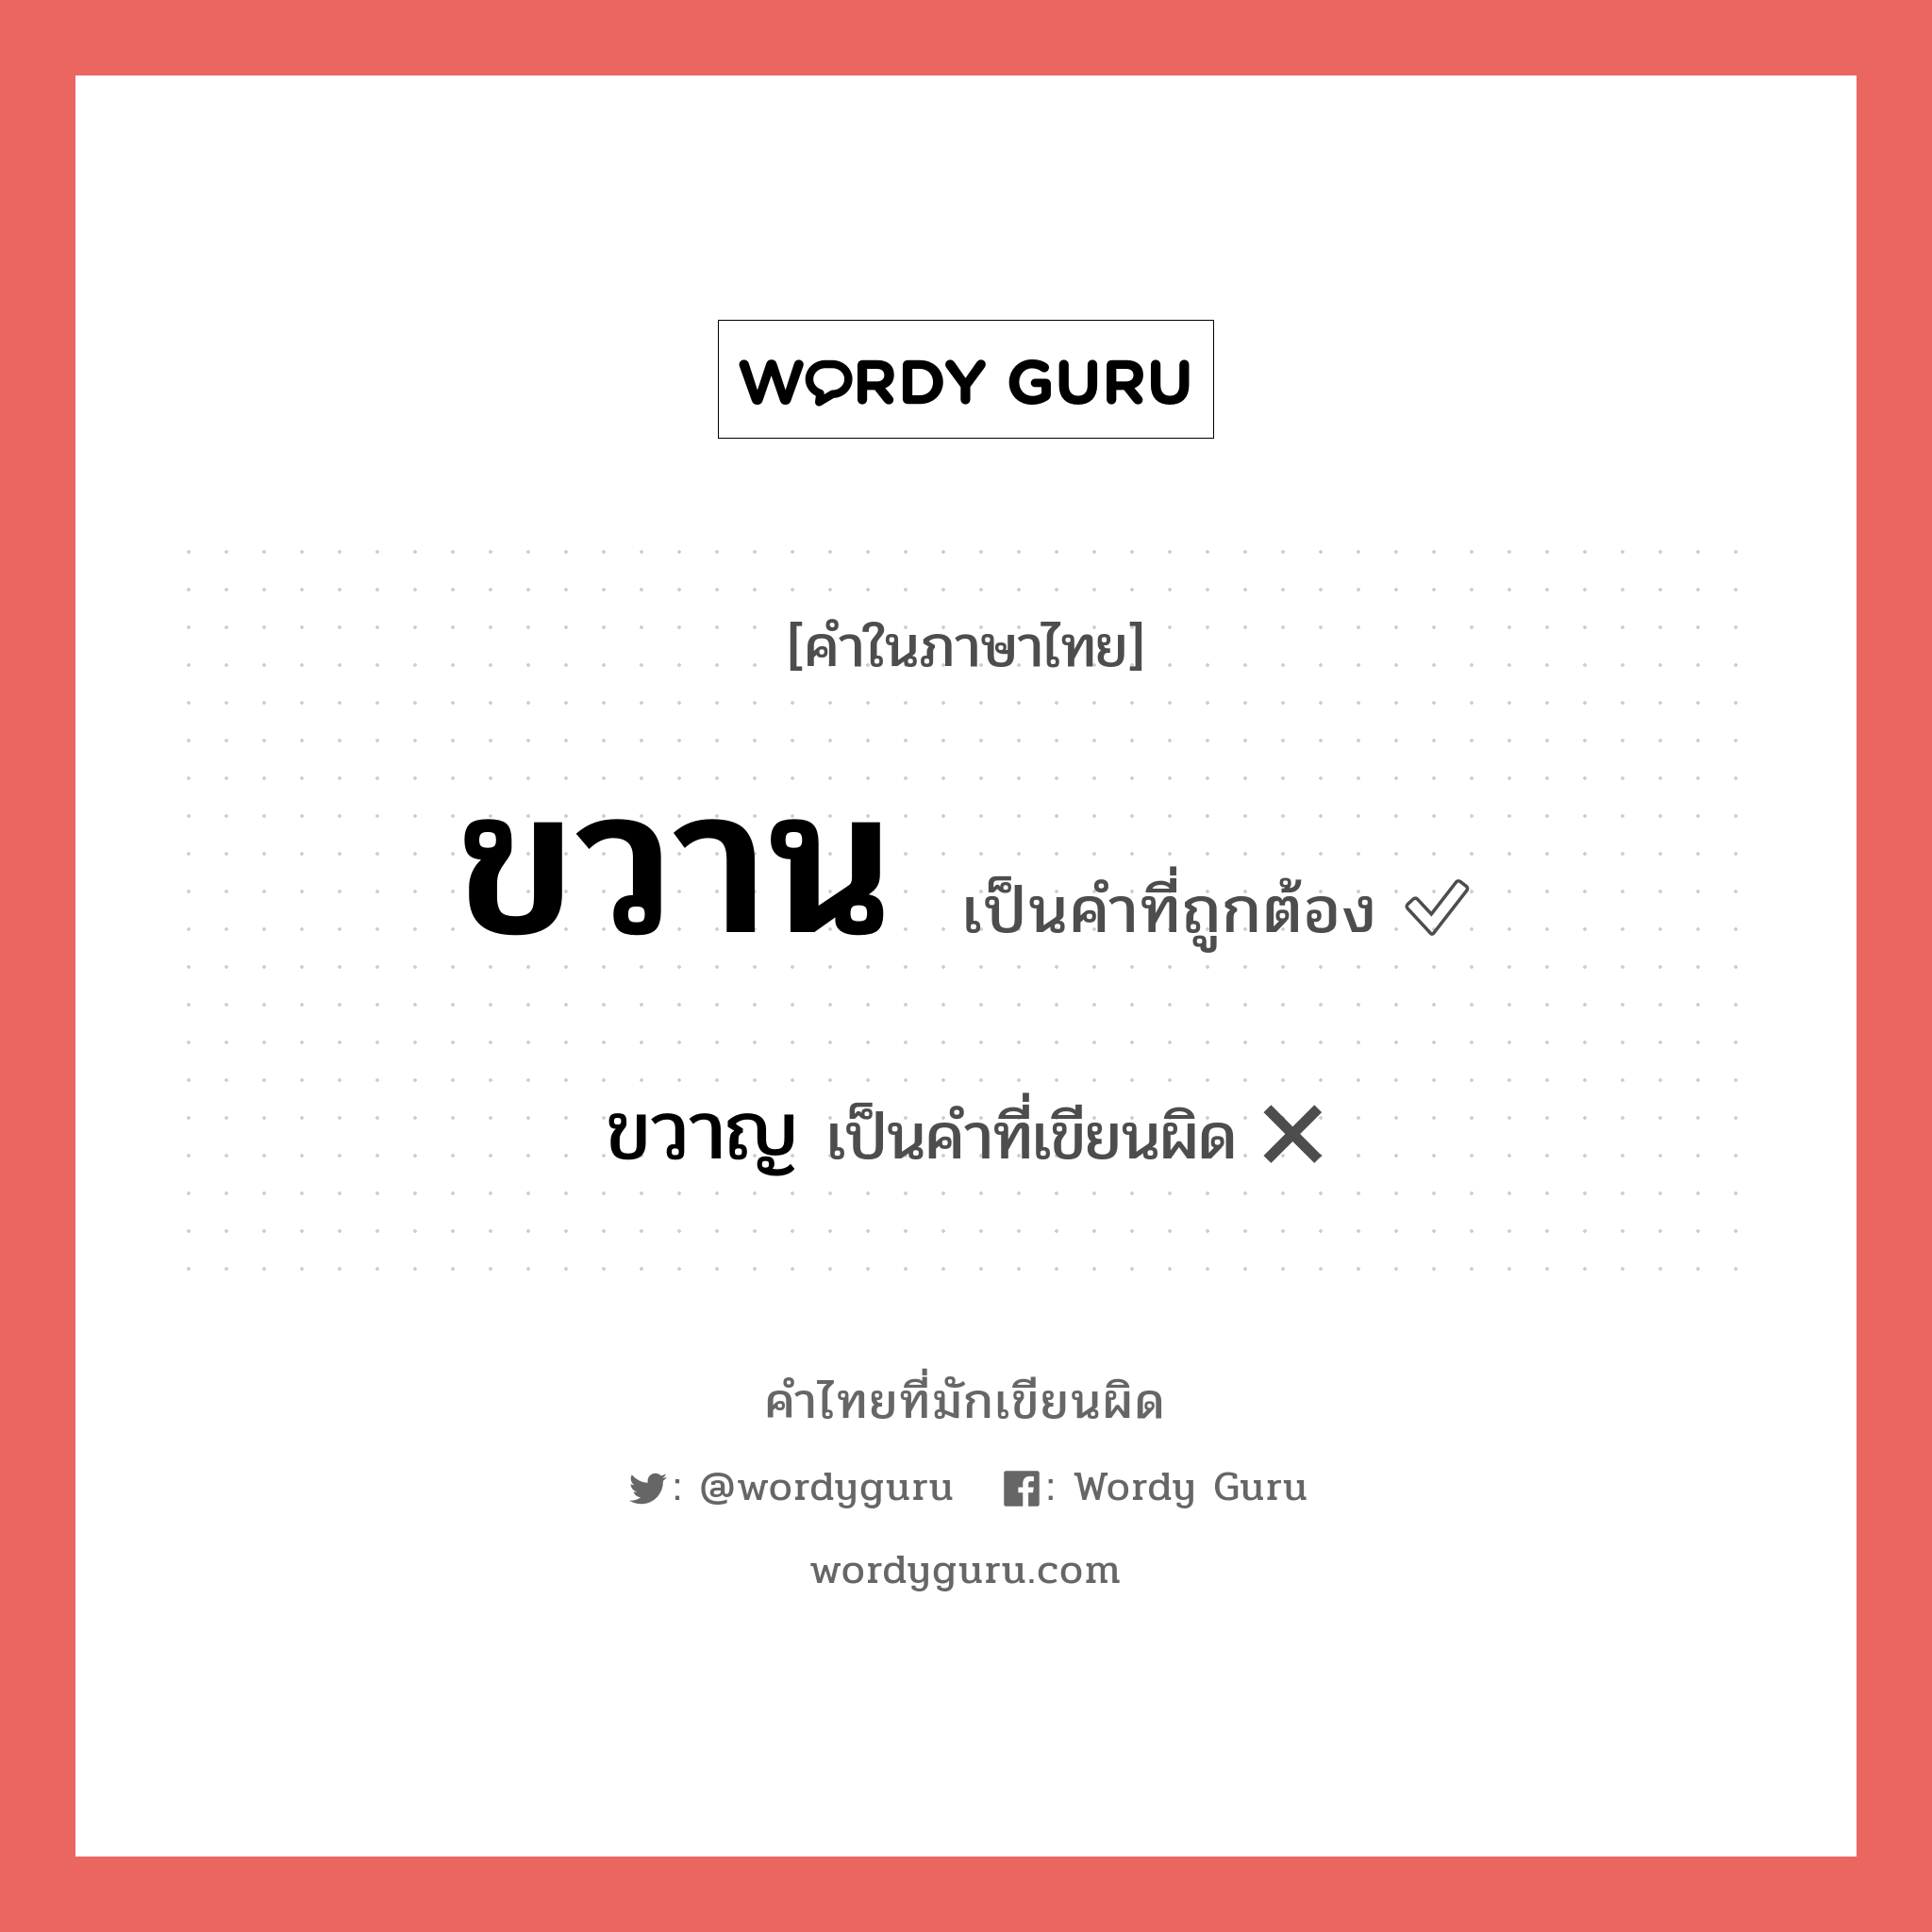 ขวาน หรือ ขวาญ คำไหนเขียนถูก?, คำในภาษาไทยที่มักเขียนผิด ขวาน คำที่ผิด ❌ ขวาญ